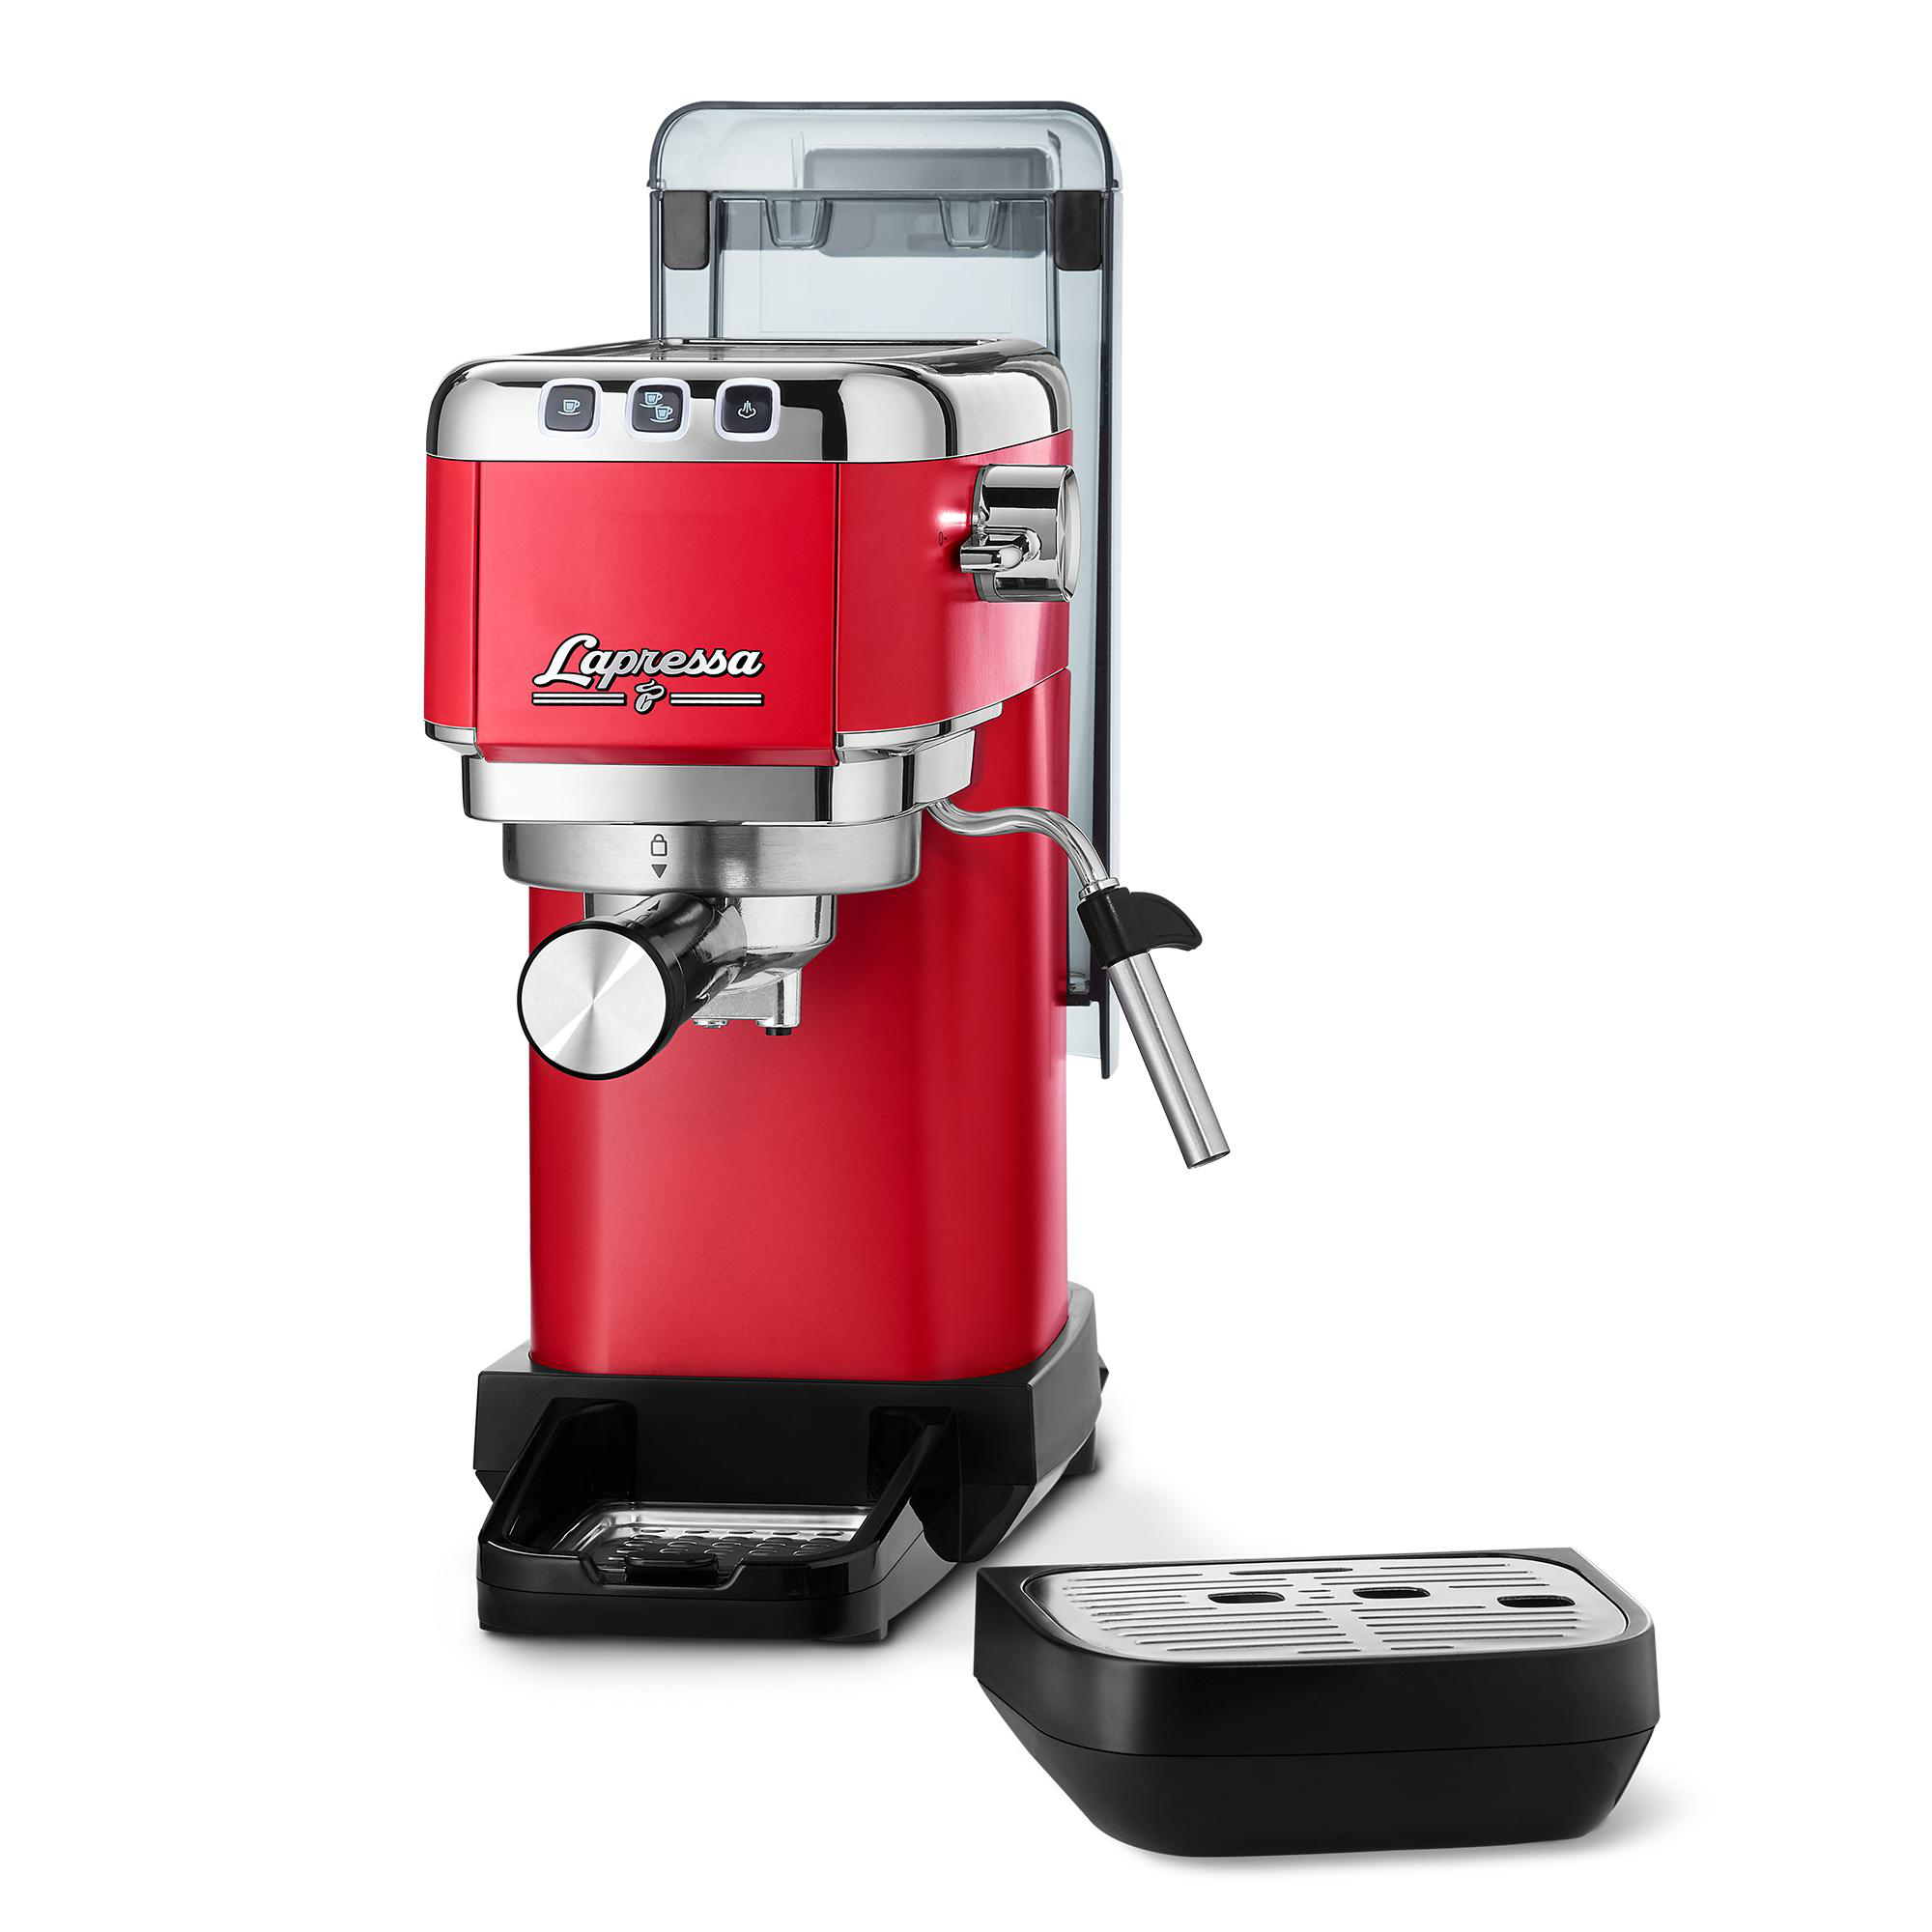 „Lapressa“ Rot Silber TCHIBO Siebträger Espressomaschine